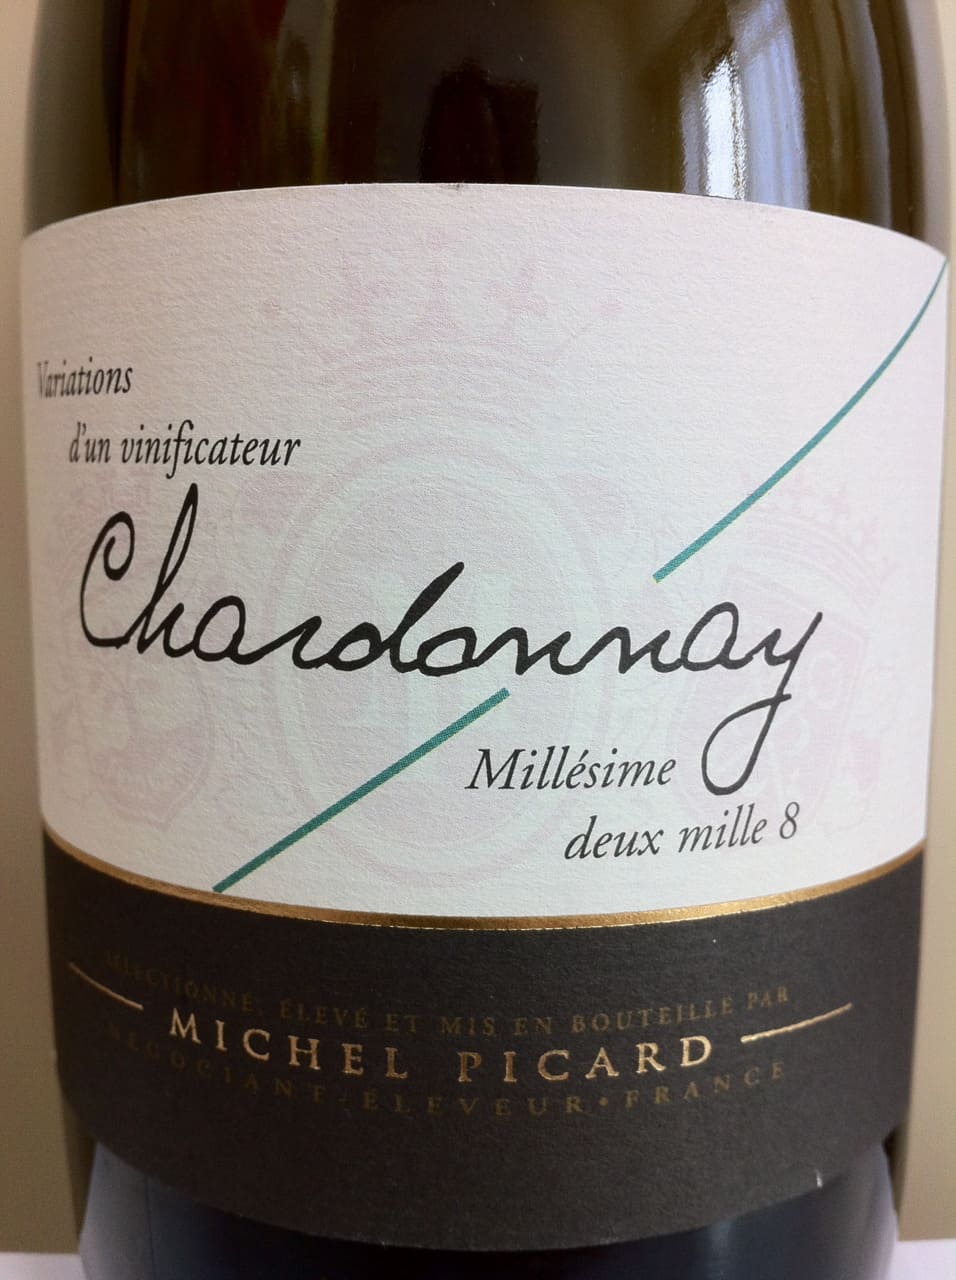 Michel Picard Chardonnay